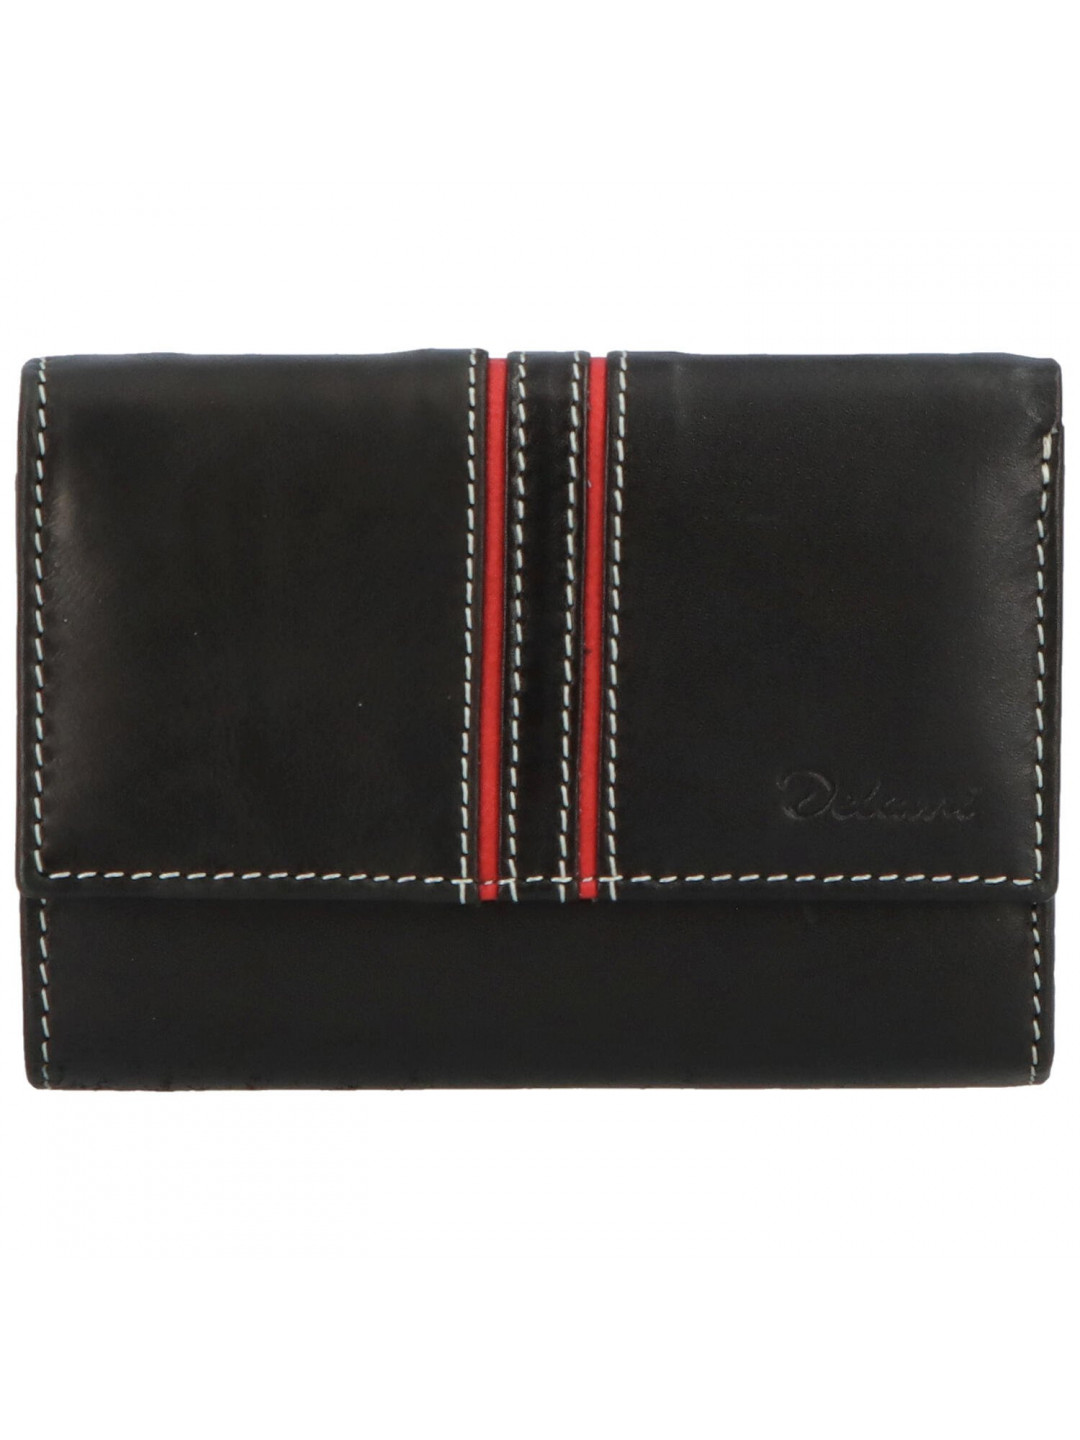 Menší dámská kožená peněženka s prošíváním Silvestro černá